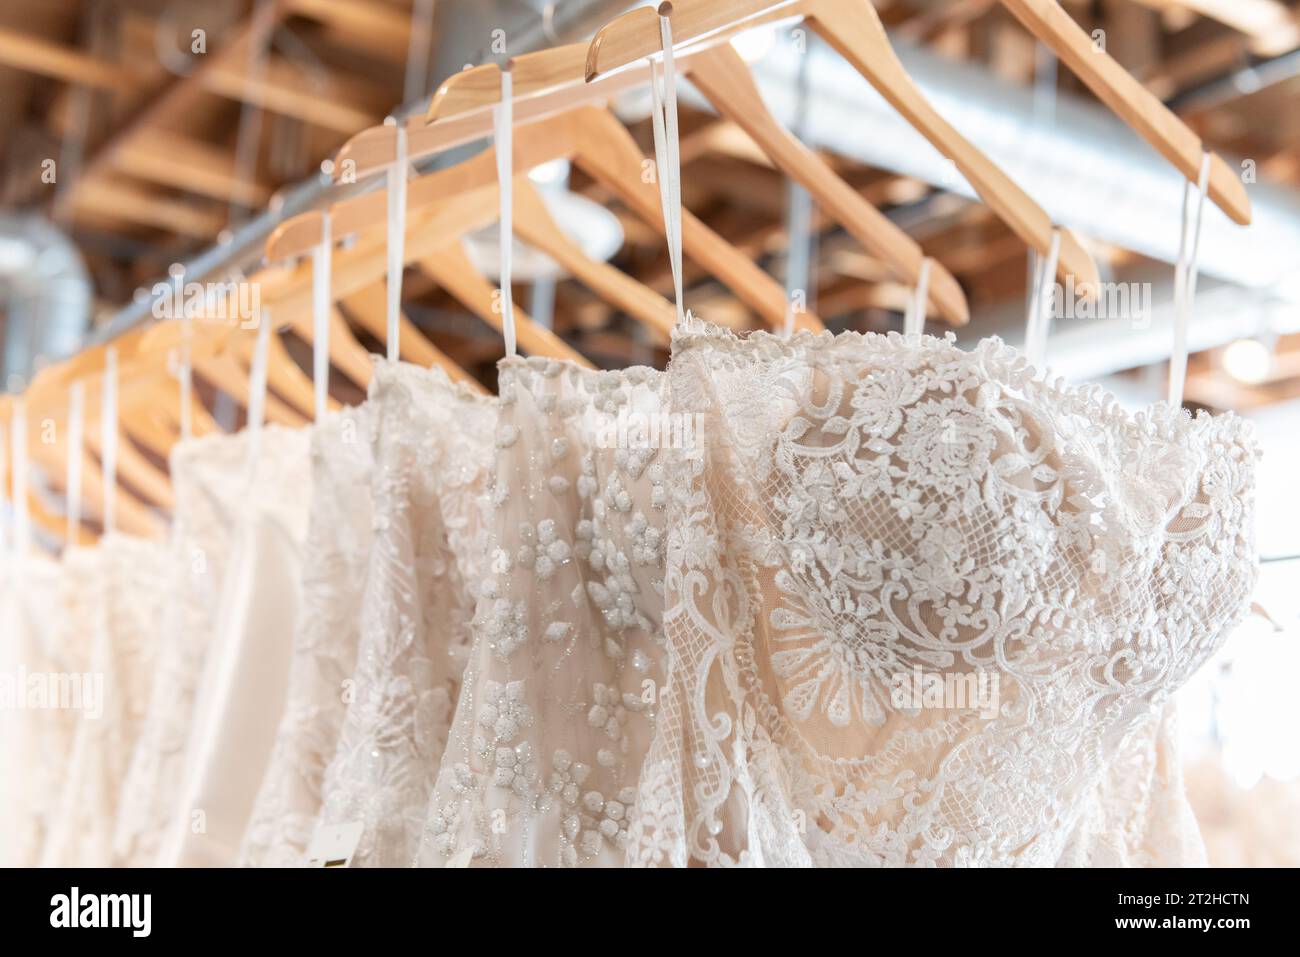 In dieser Boutique stehen viele verschiedene Größen und Muster von Brautkleidern zur Auswahl. Stockfoto